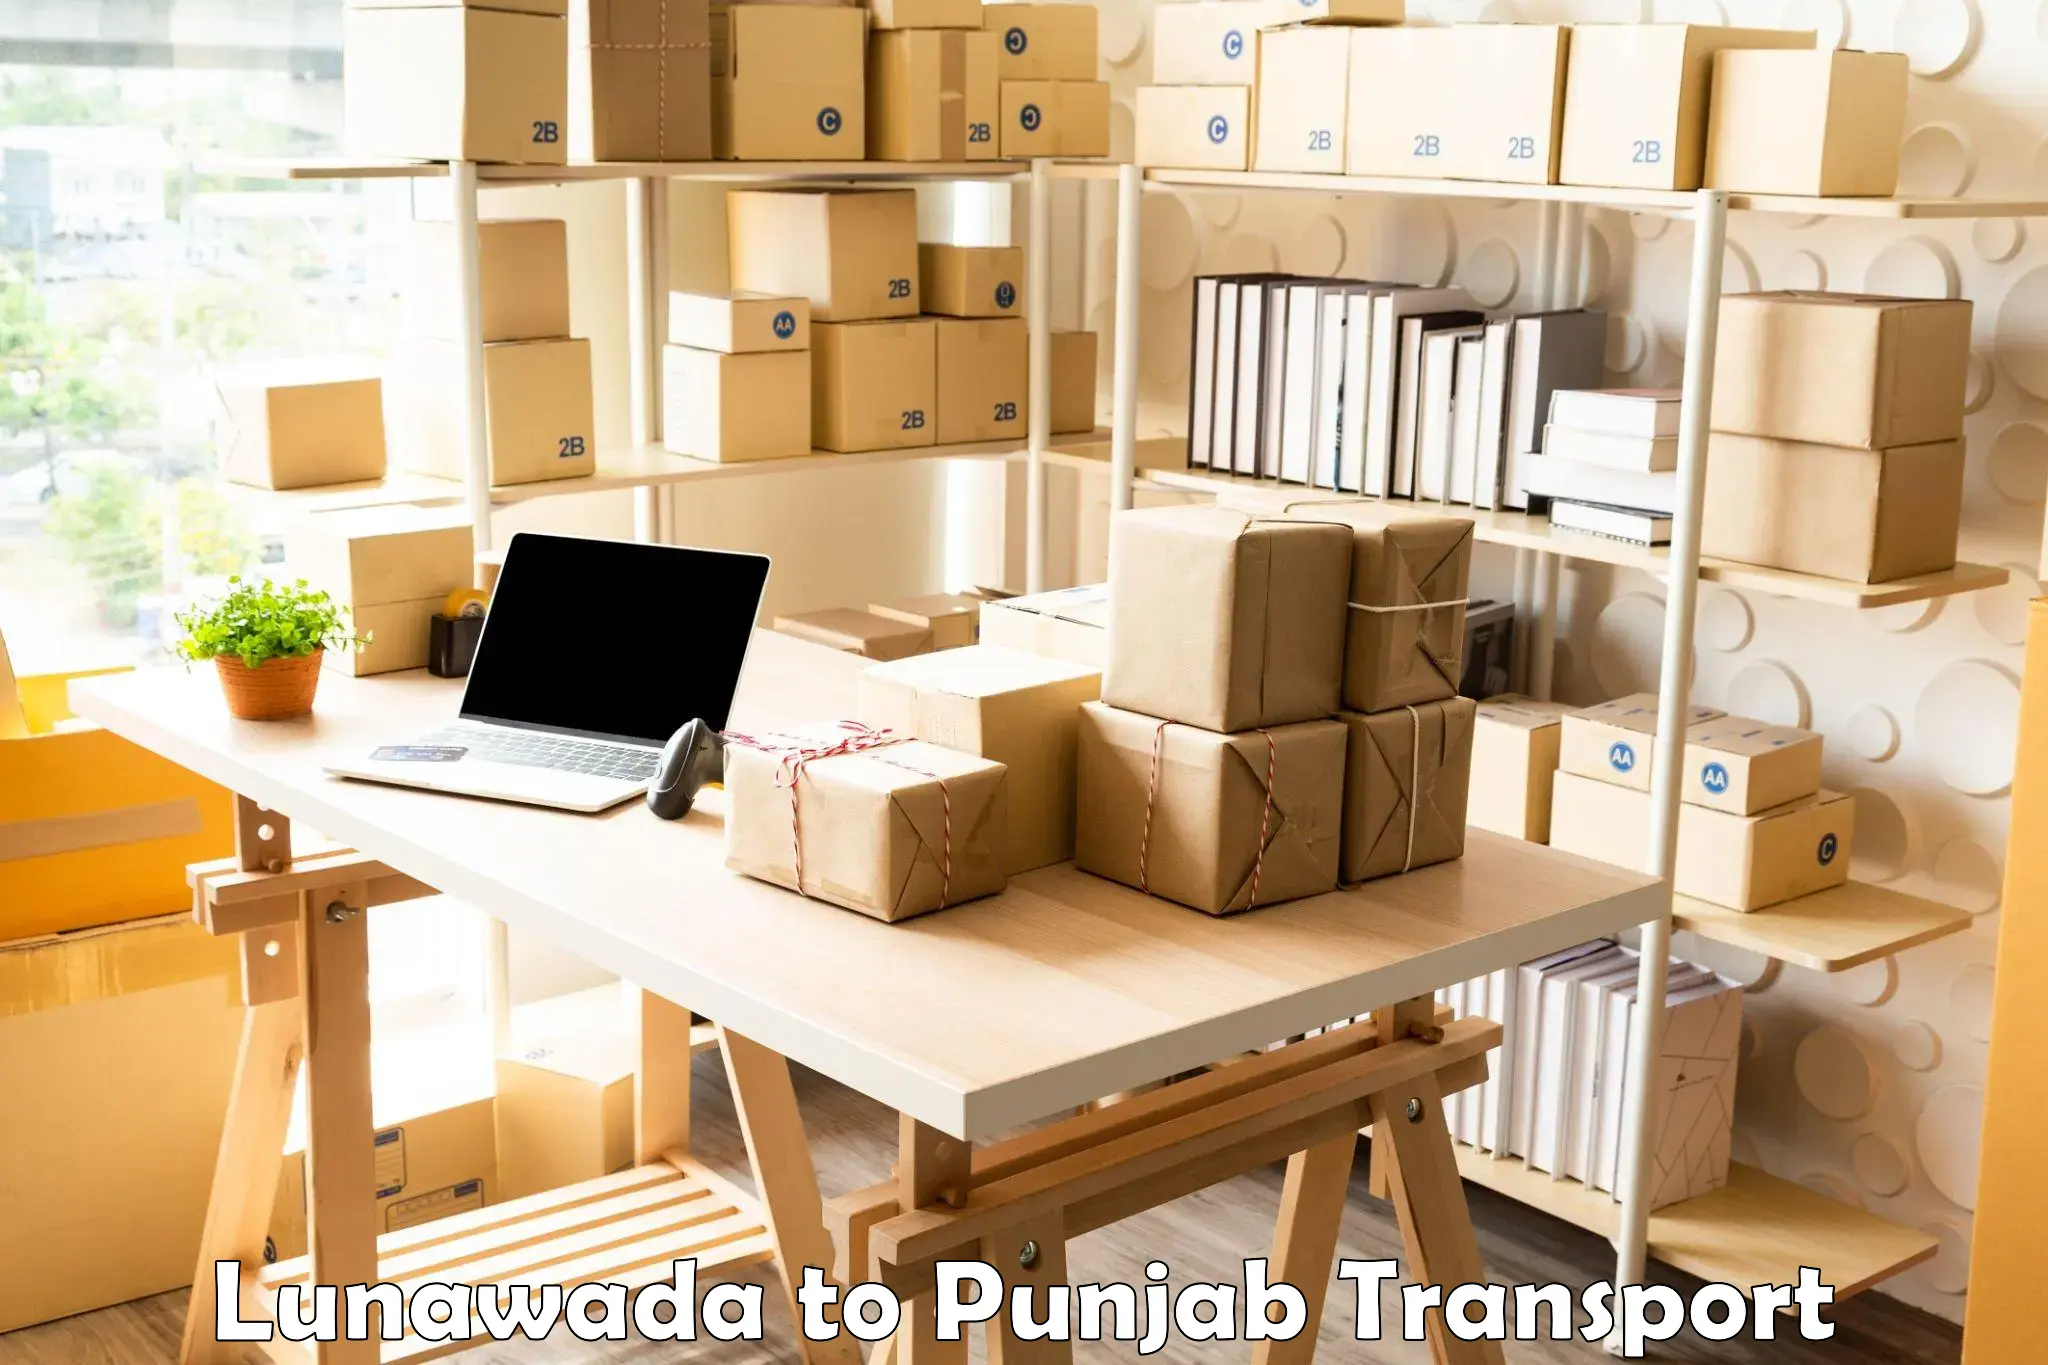 Commercial transport service Lunawada to Punjab